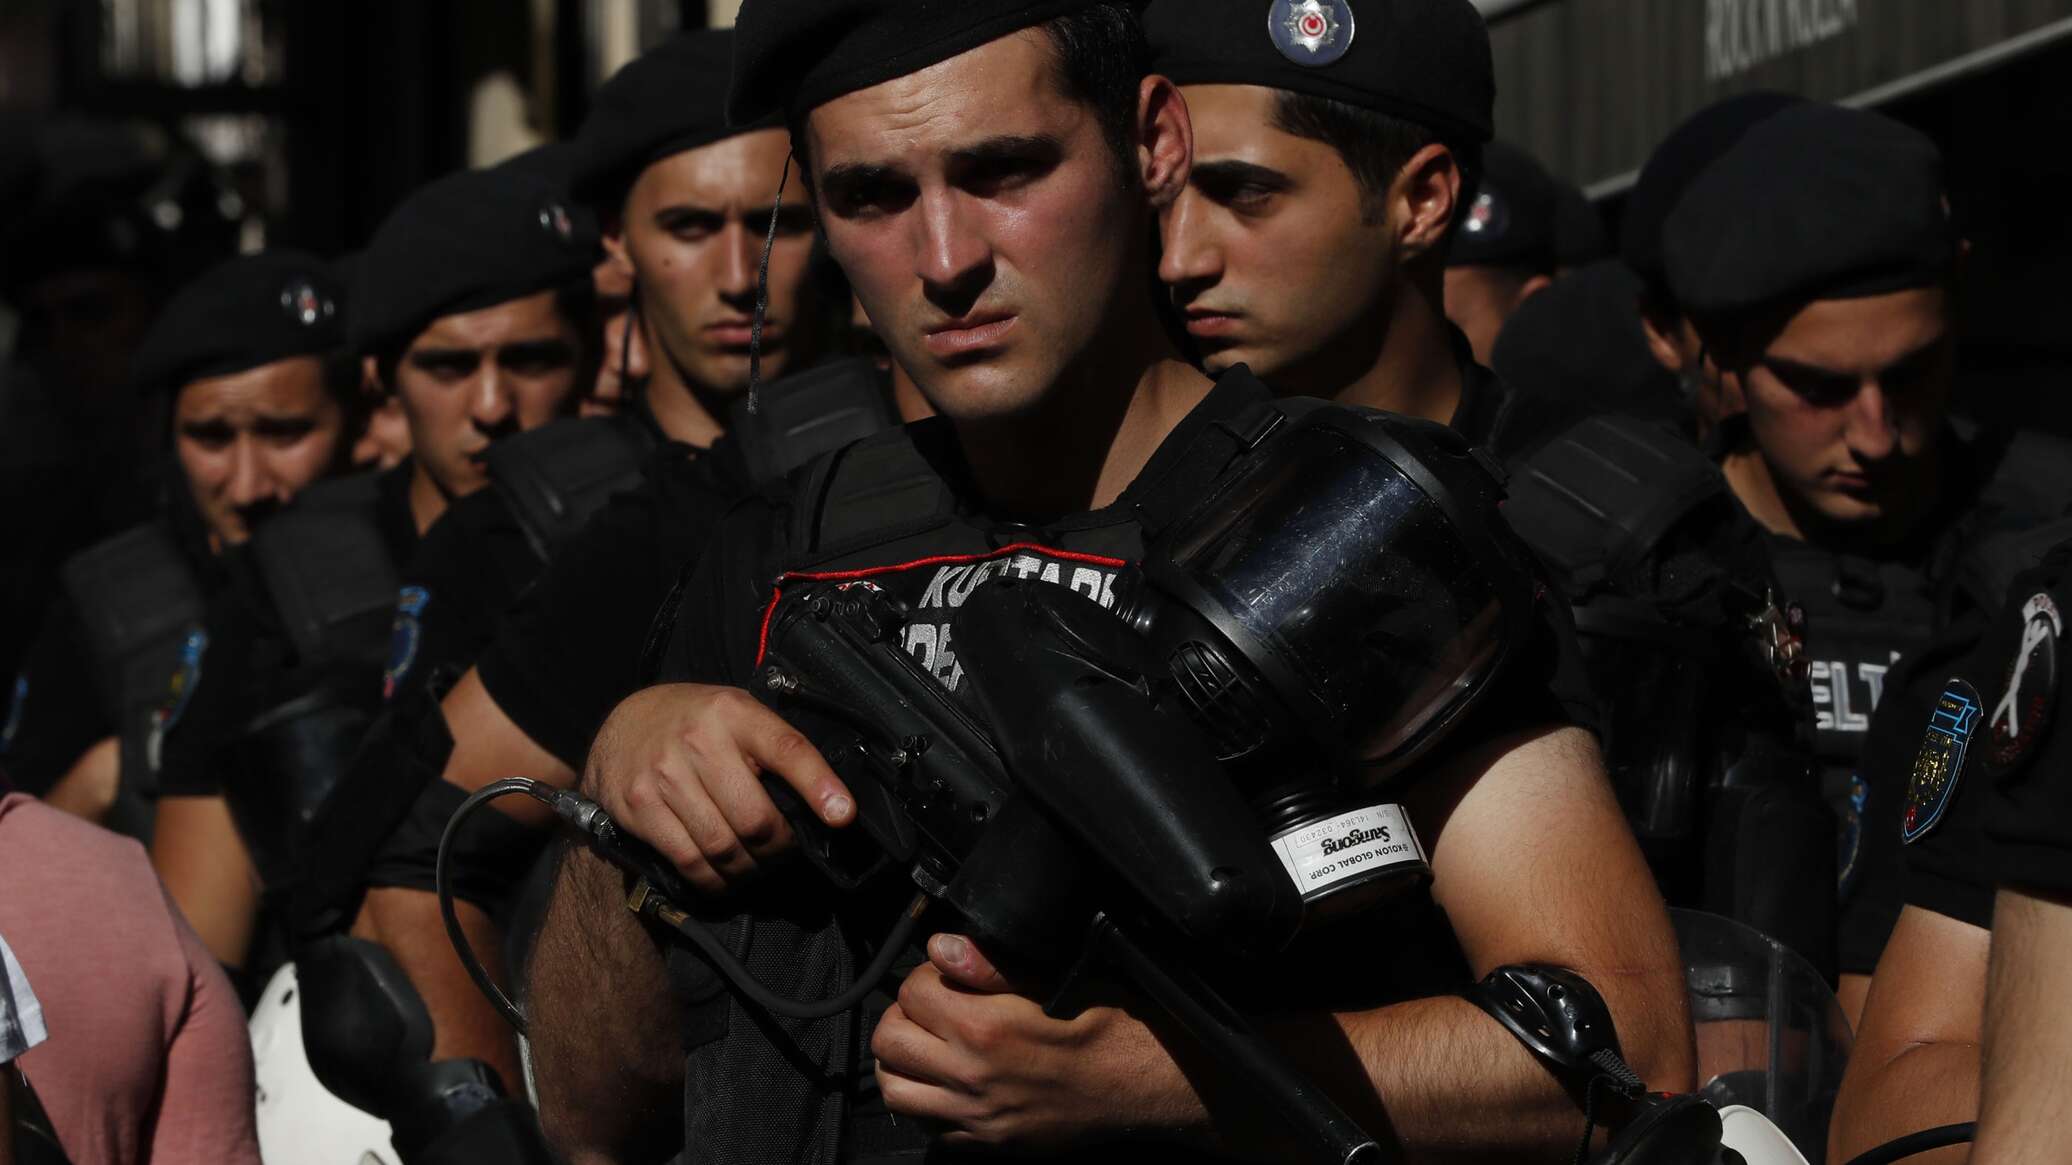 المخابرات التركية تعلن اعتقال 7 أشخاص للاشتباه ببيعهم معلومات للموساد الإسرائيلي